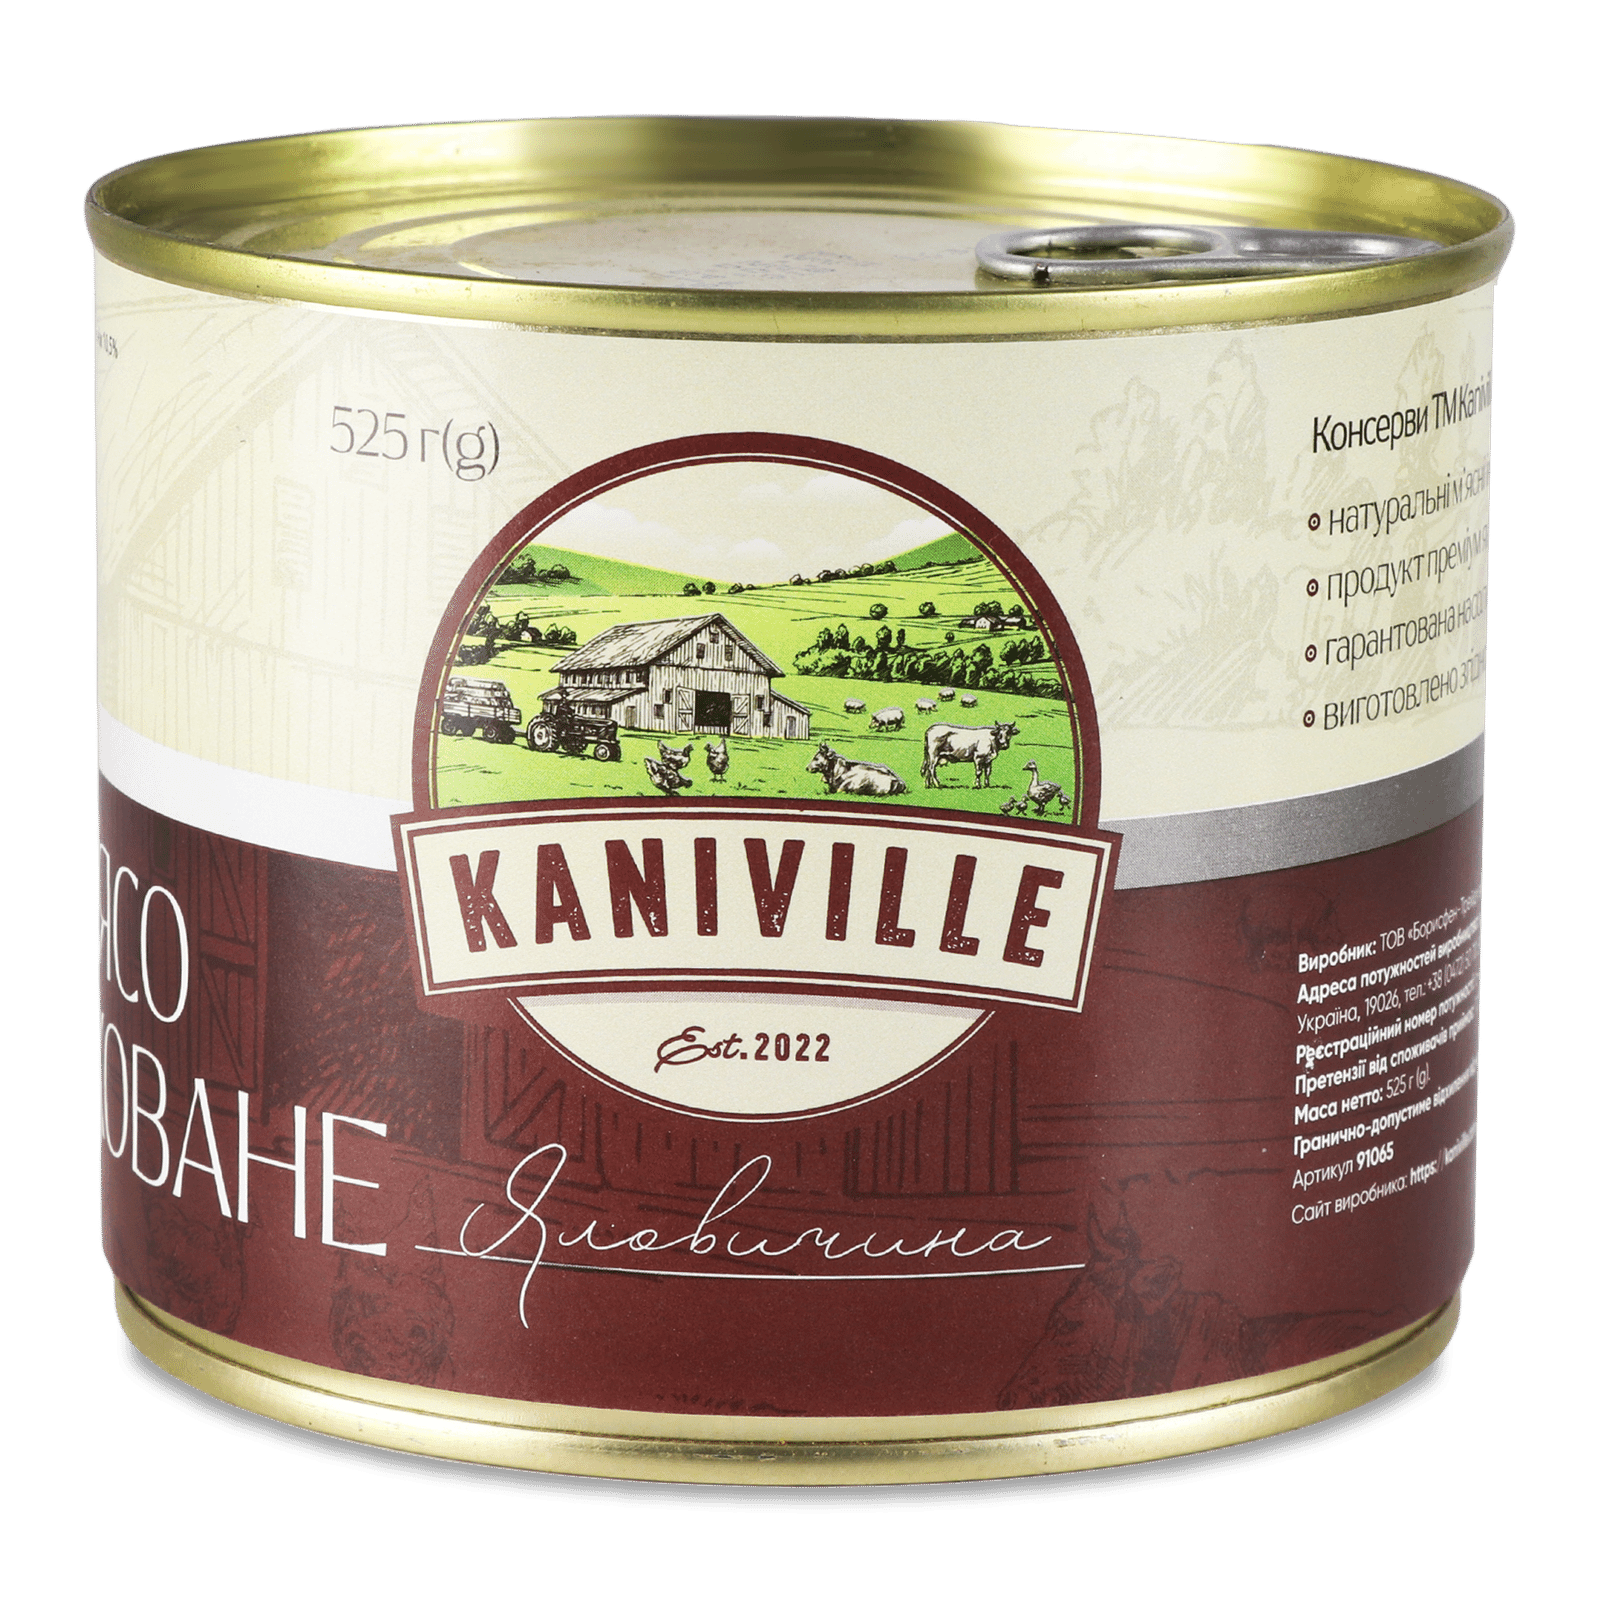 М'ясо Kaniville яловичина тушковане - 1